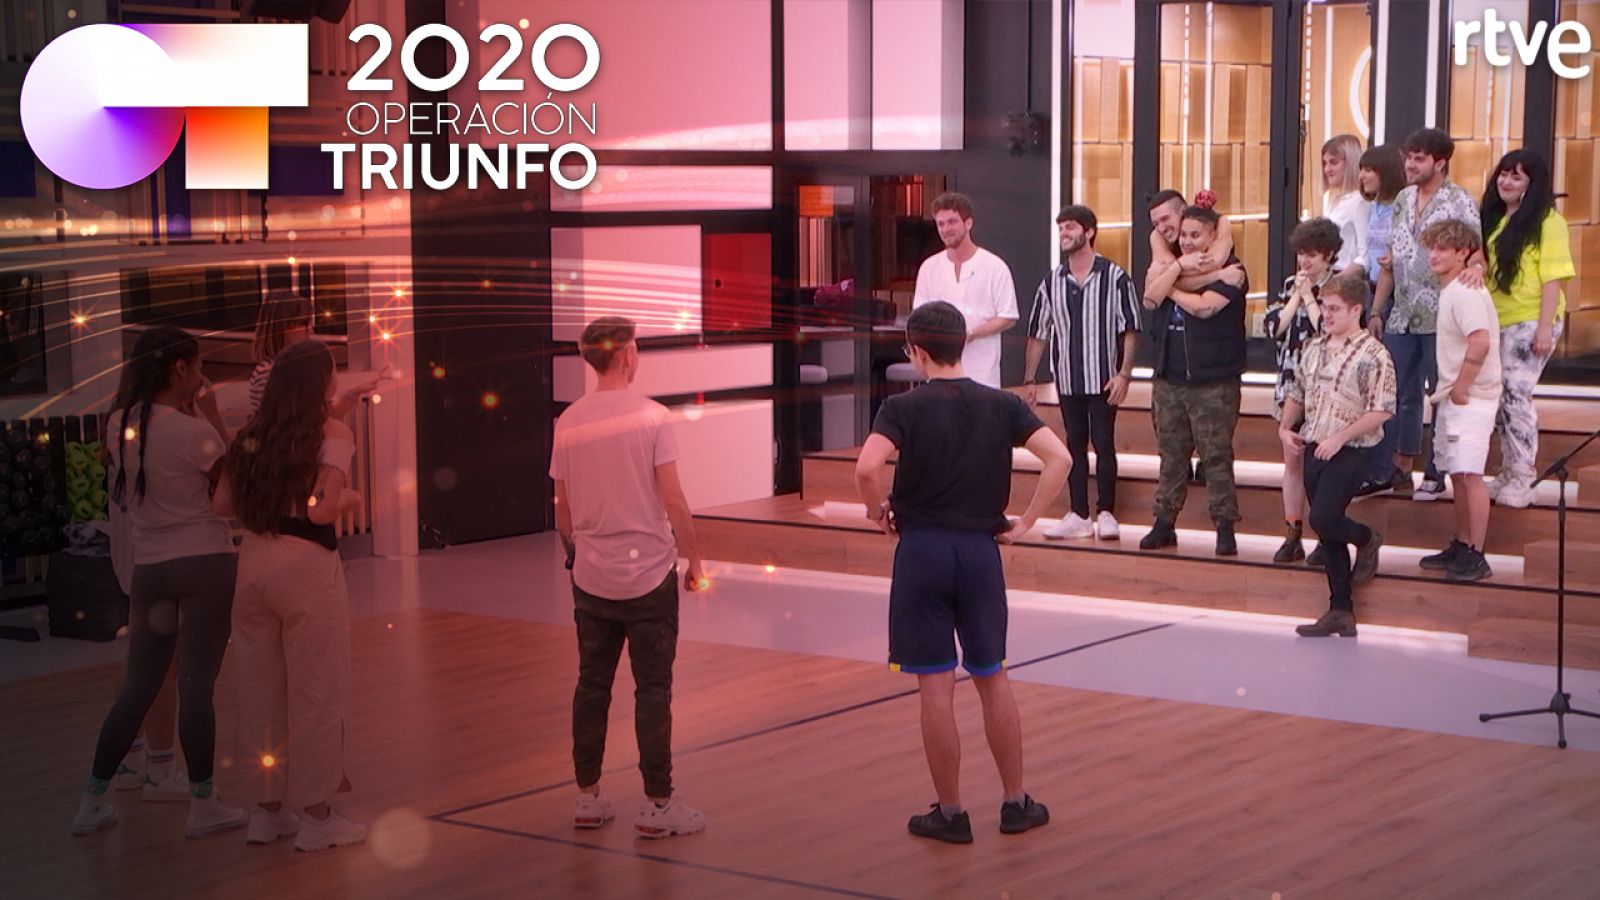 OT 2020: Ver en directo la grabación del disco de Operación Triunfo